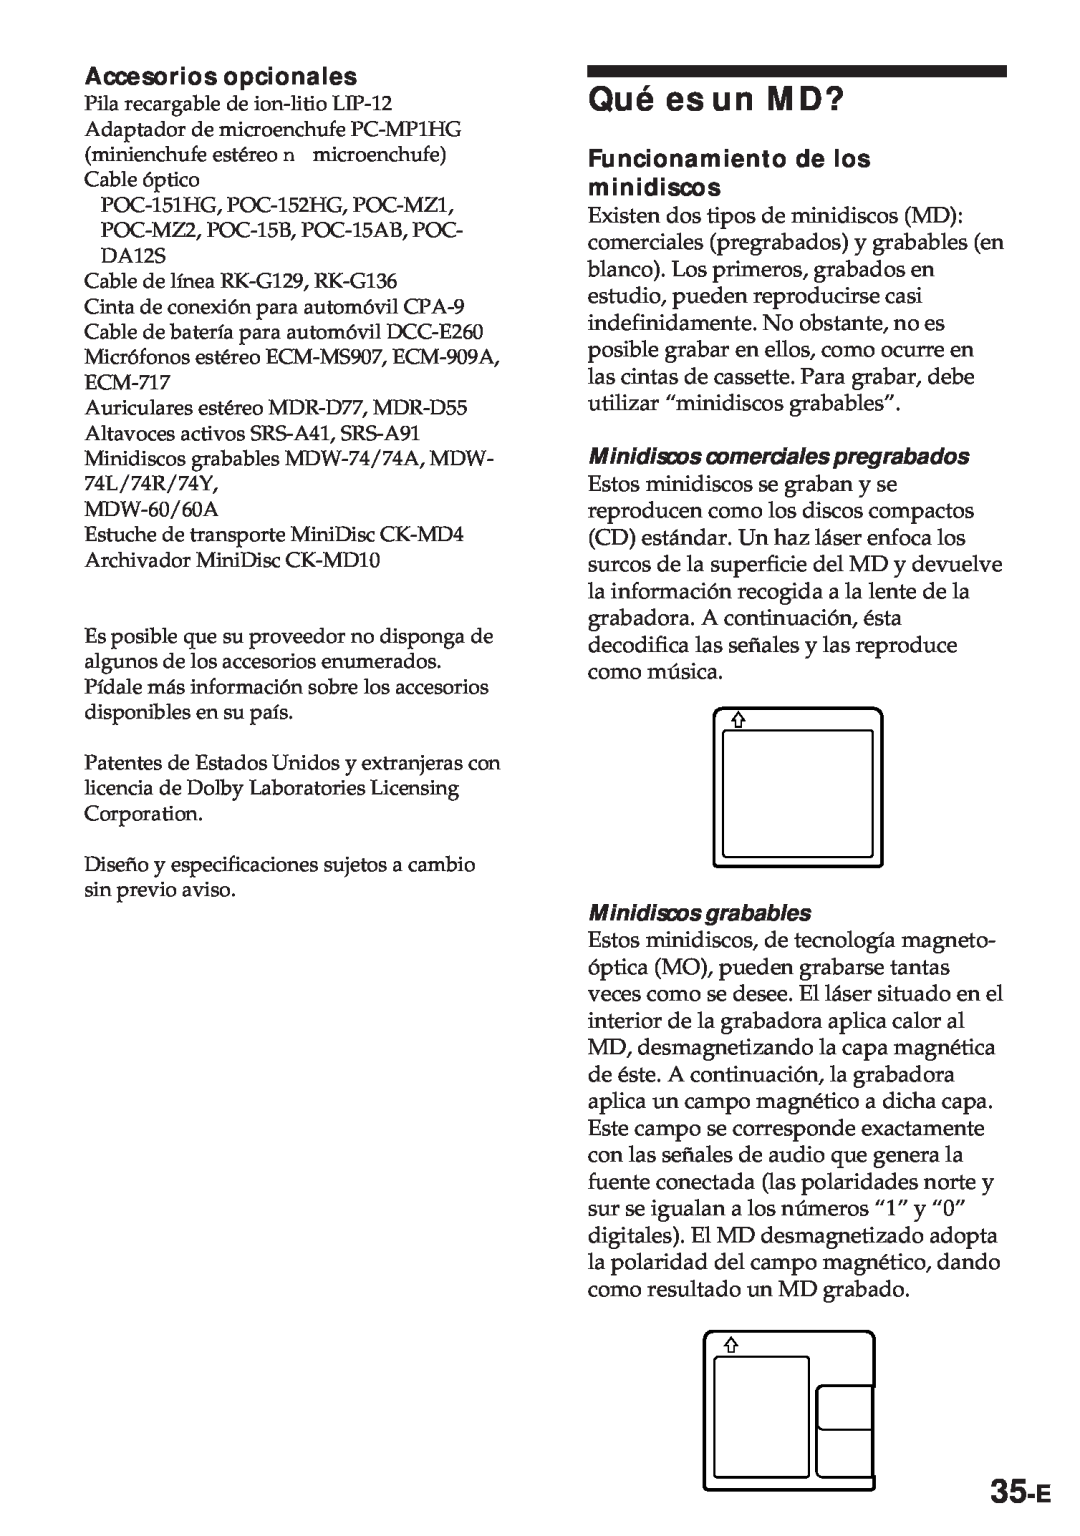 Sony MZ-R30 Qué es un MD?, 35-E, Accesorios opcionales, Funcionamiento de los minidiscos, Minidiscos grabables 